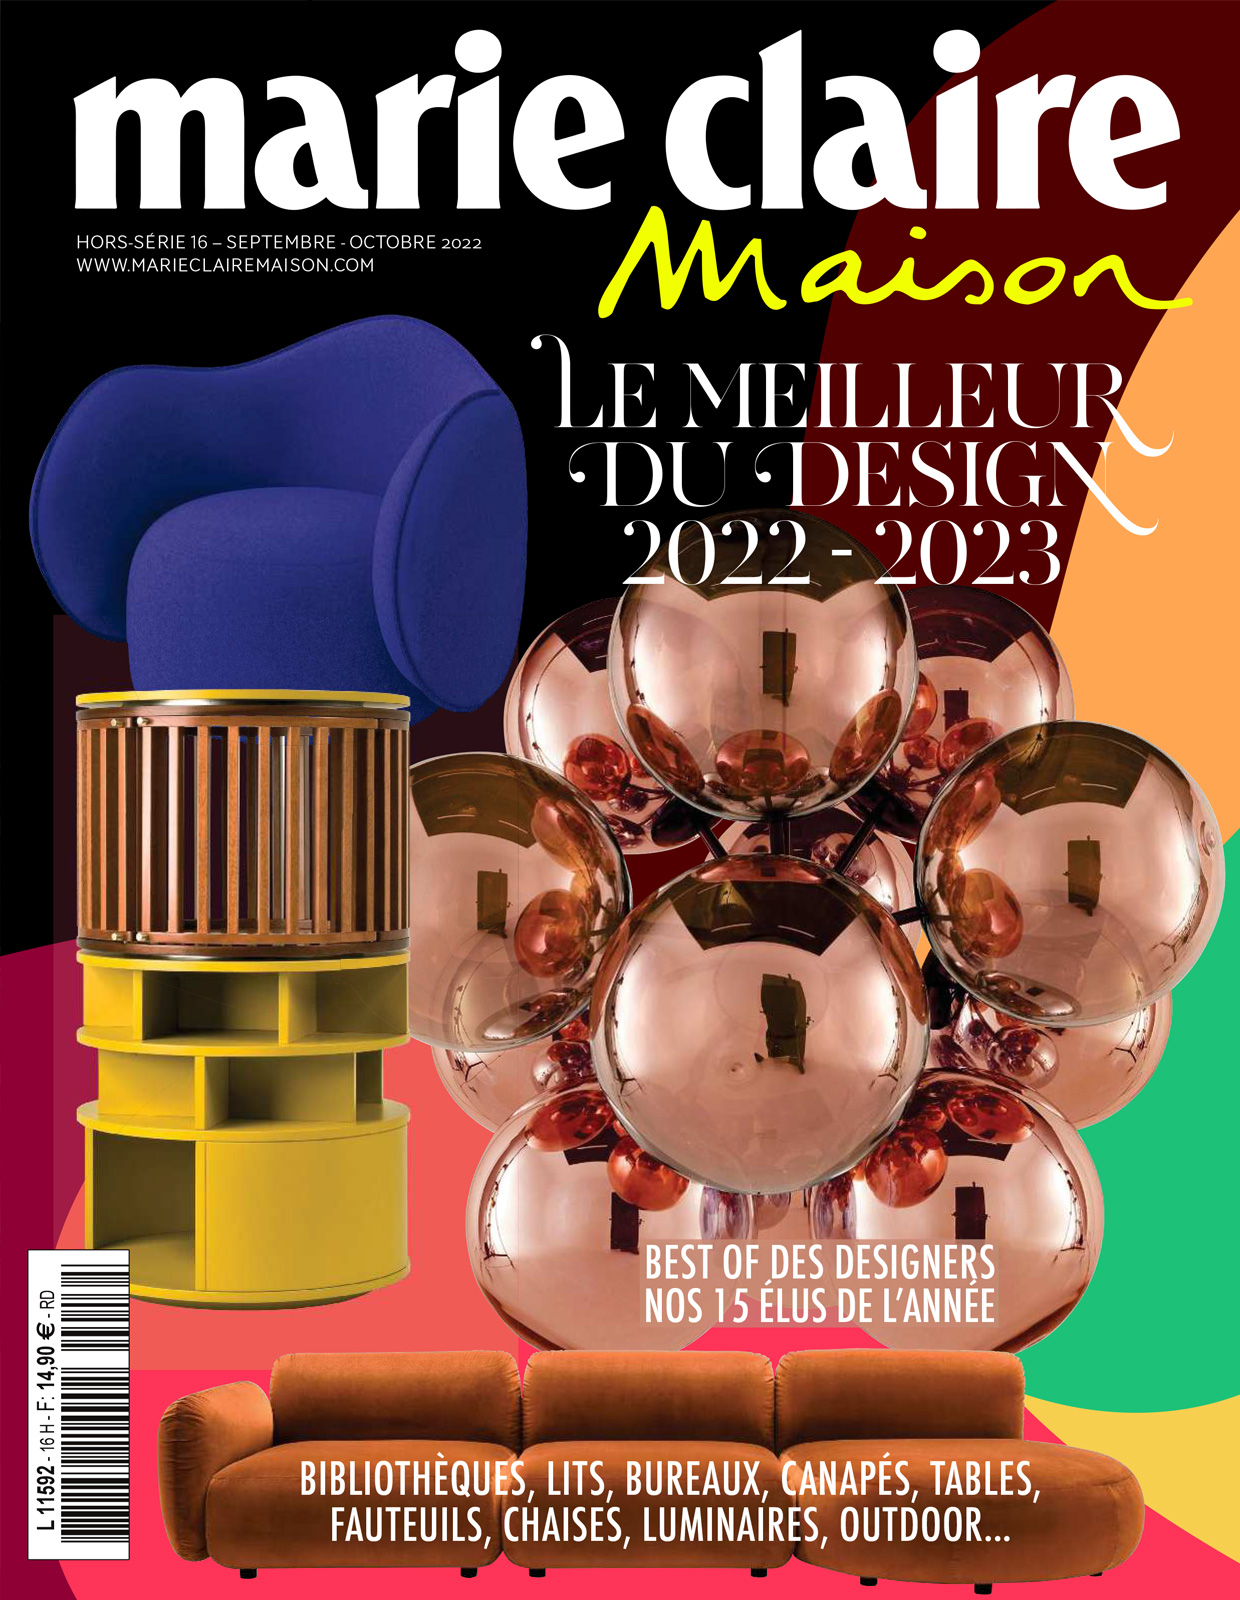 Marie-Claire Maison – Le meilleur du design 2022 / 2023